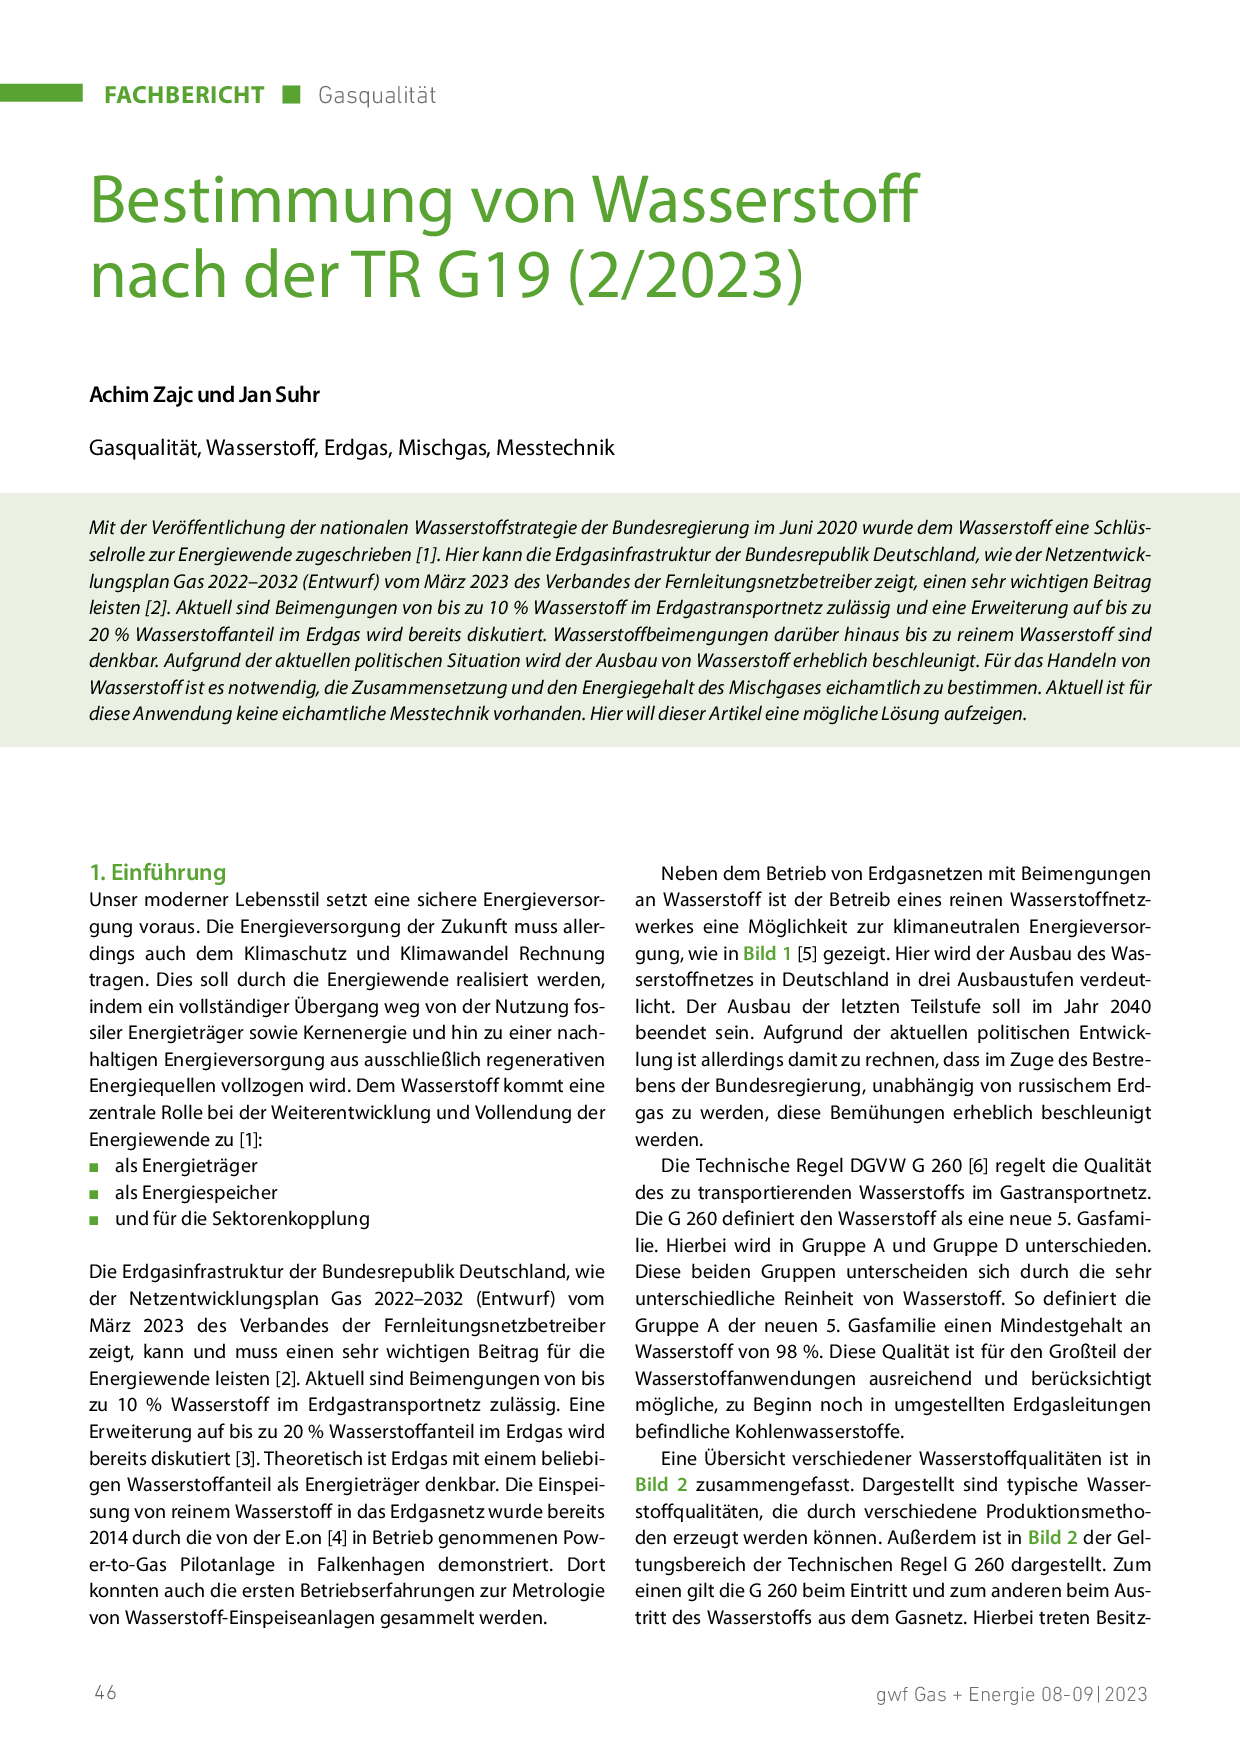 Bestimmung von Wasserstoff nach der TR G19 (2/2023)